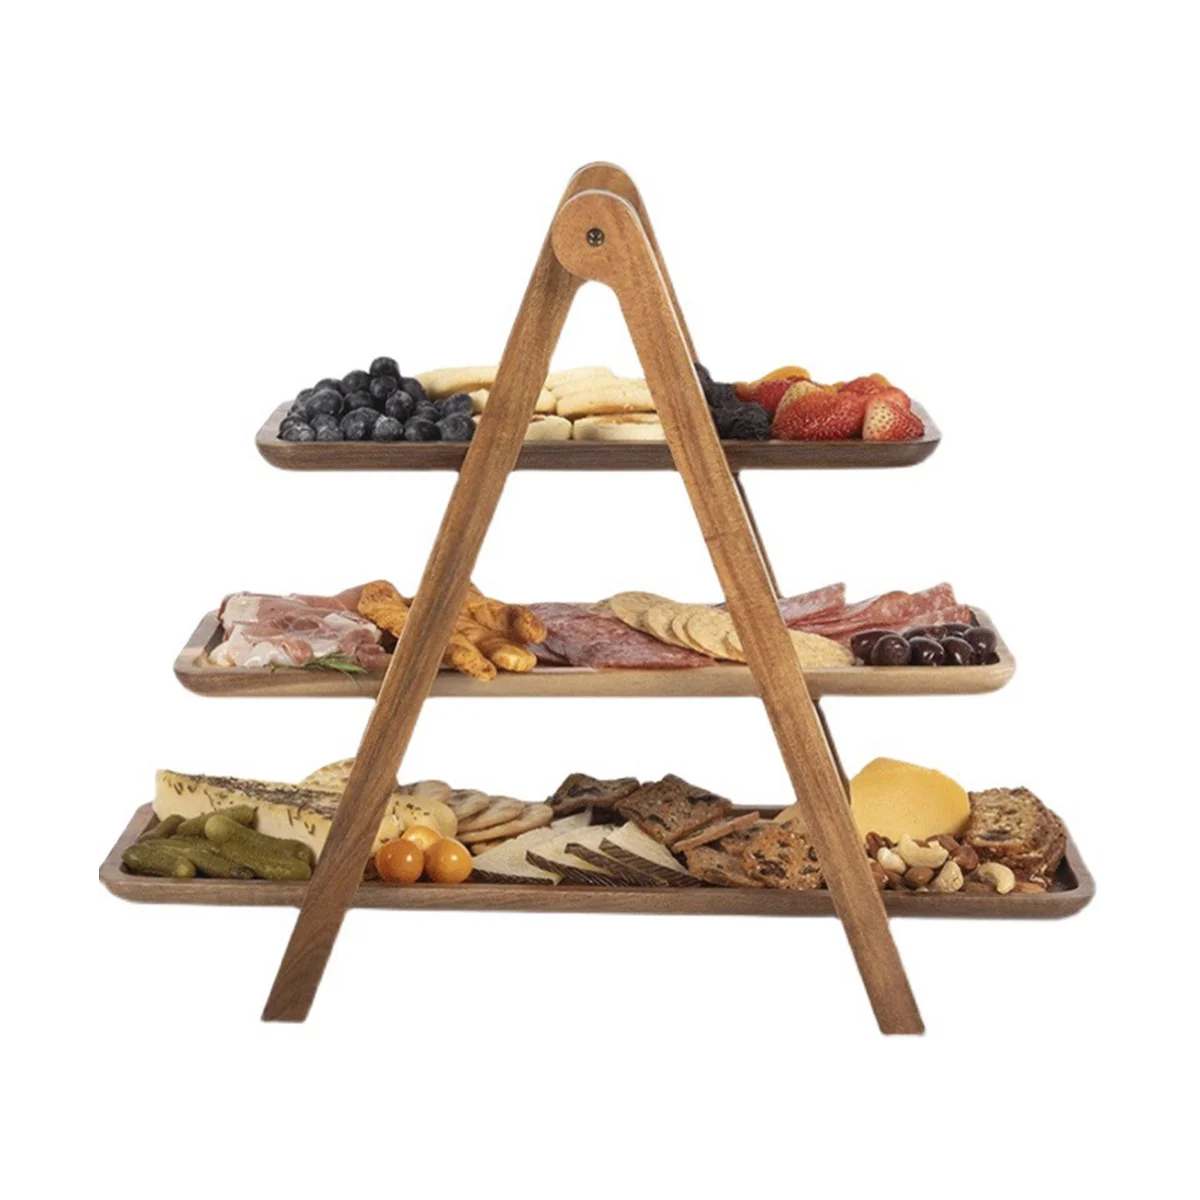 

3-уровневый сервировочный поднос, деревянный поднос для торта, поднос для торта в деревенском стиле, подносы для сервировки посуды и блюд